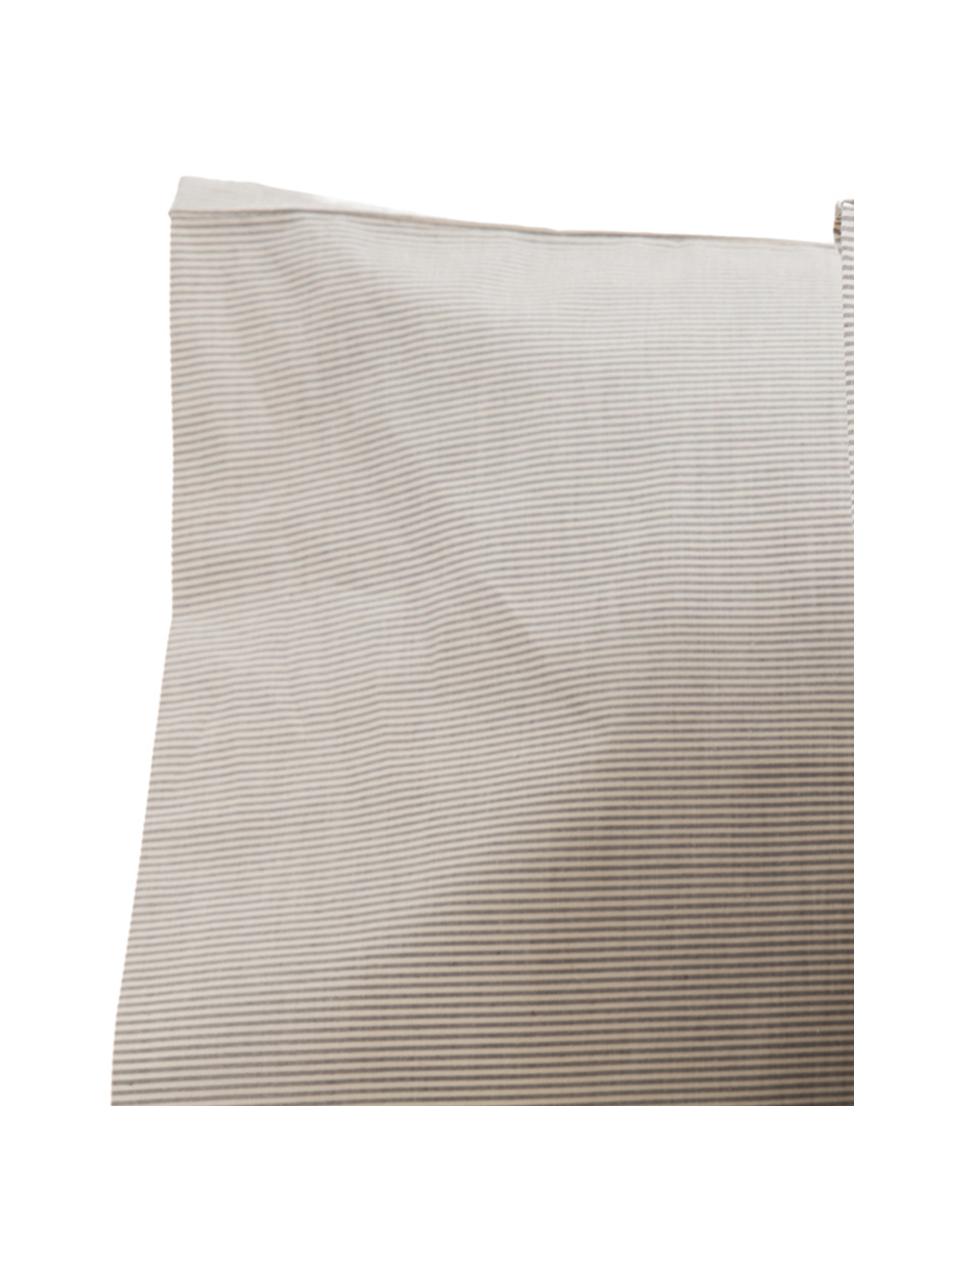 Parure copripiumino in percalle Stripes, Tessuto: percalle, Grigio, grigio chiaro, 200 x 260 cm + 2 federe + 1 lenzuolo con angoli